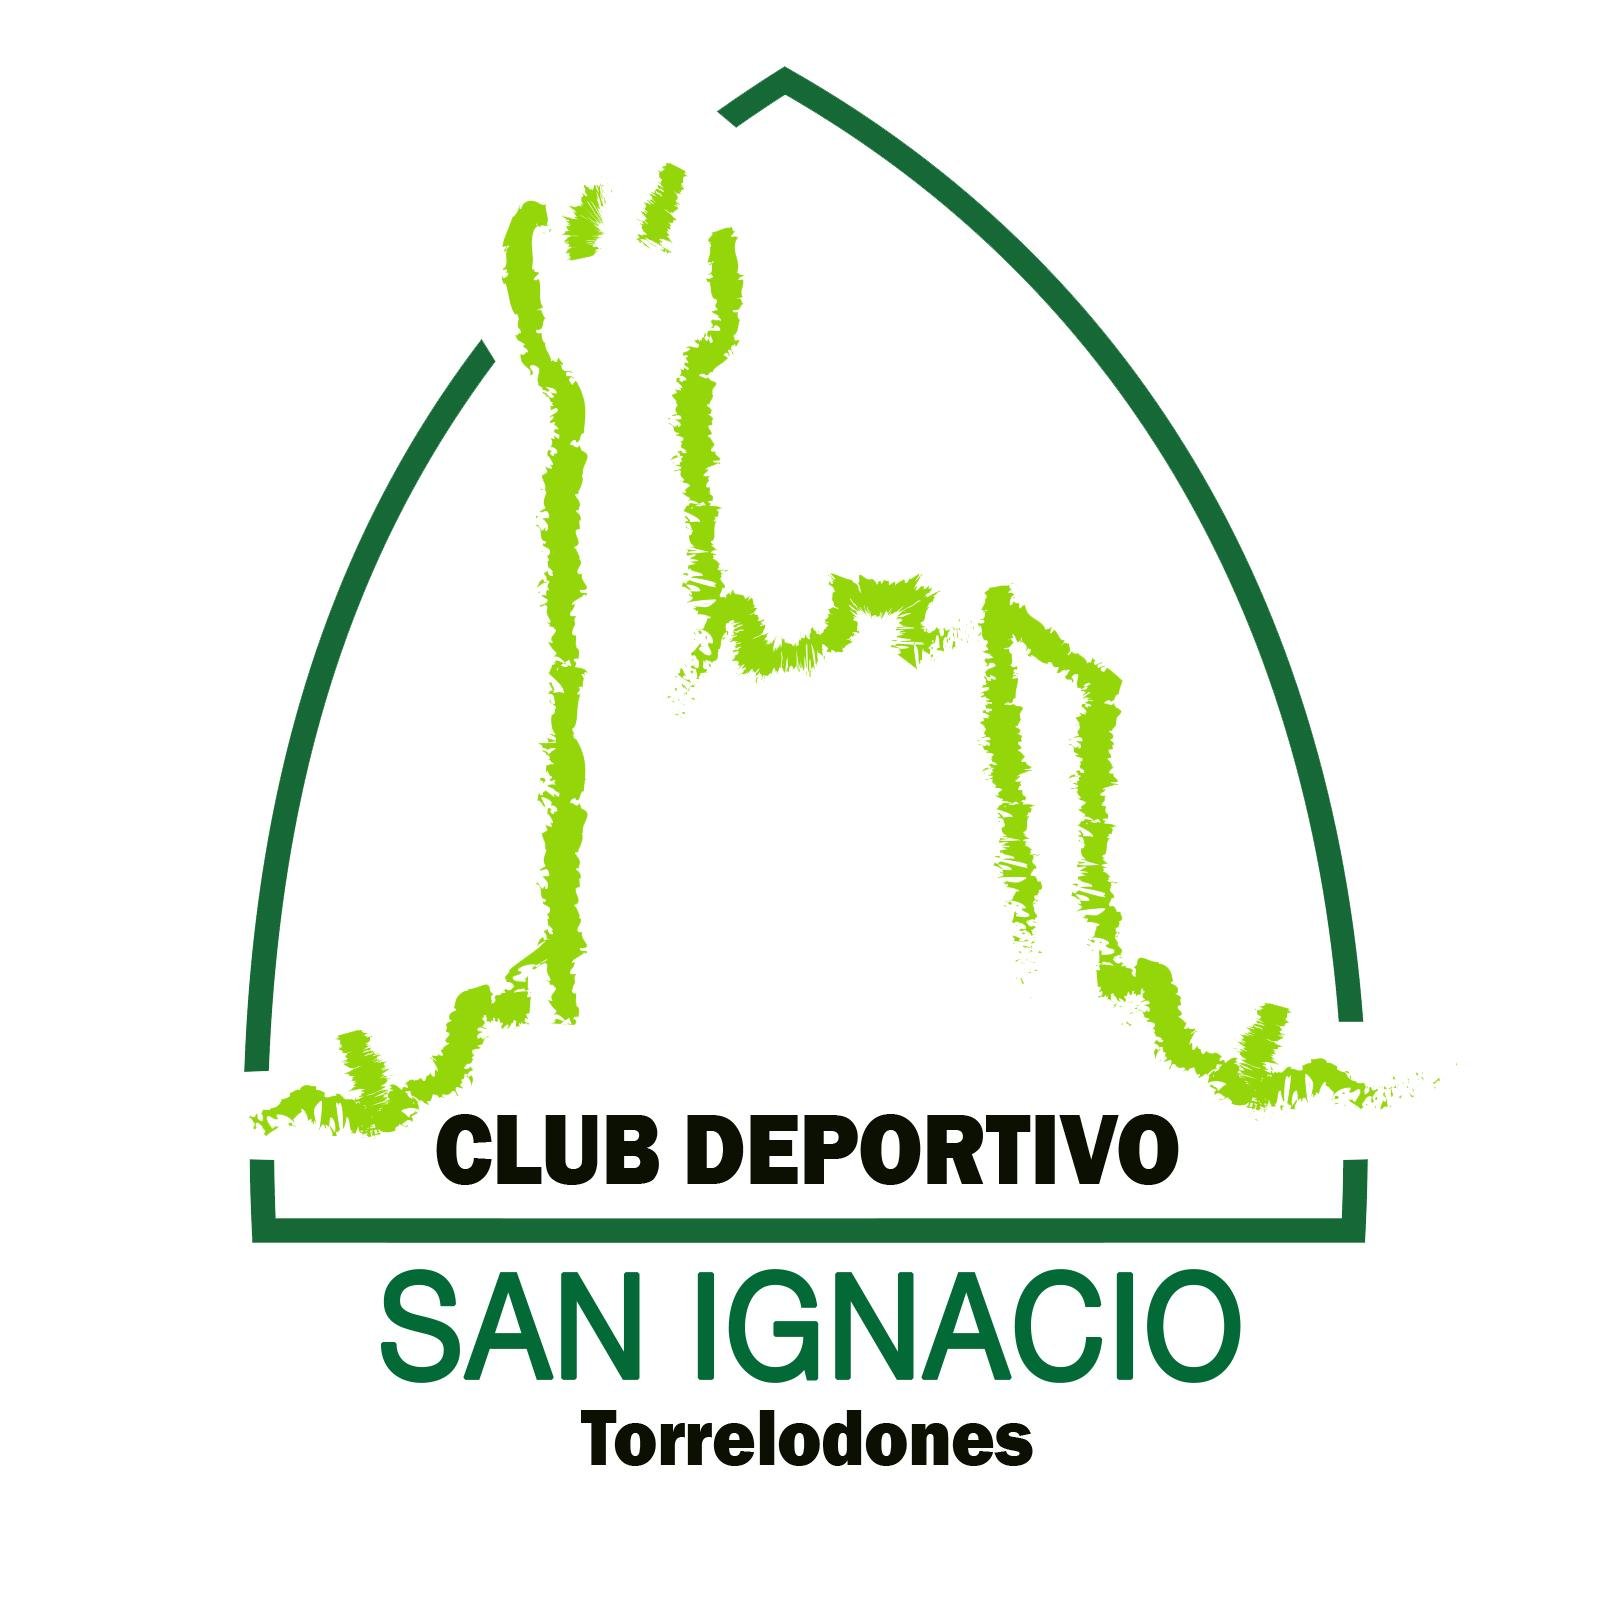 Club Deportivo San Ignacio. #Baloncesto, #Voleibol y #Fitness en #Torrelodones